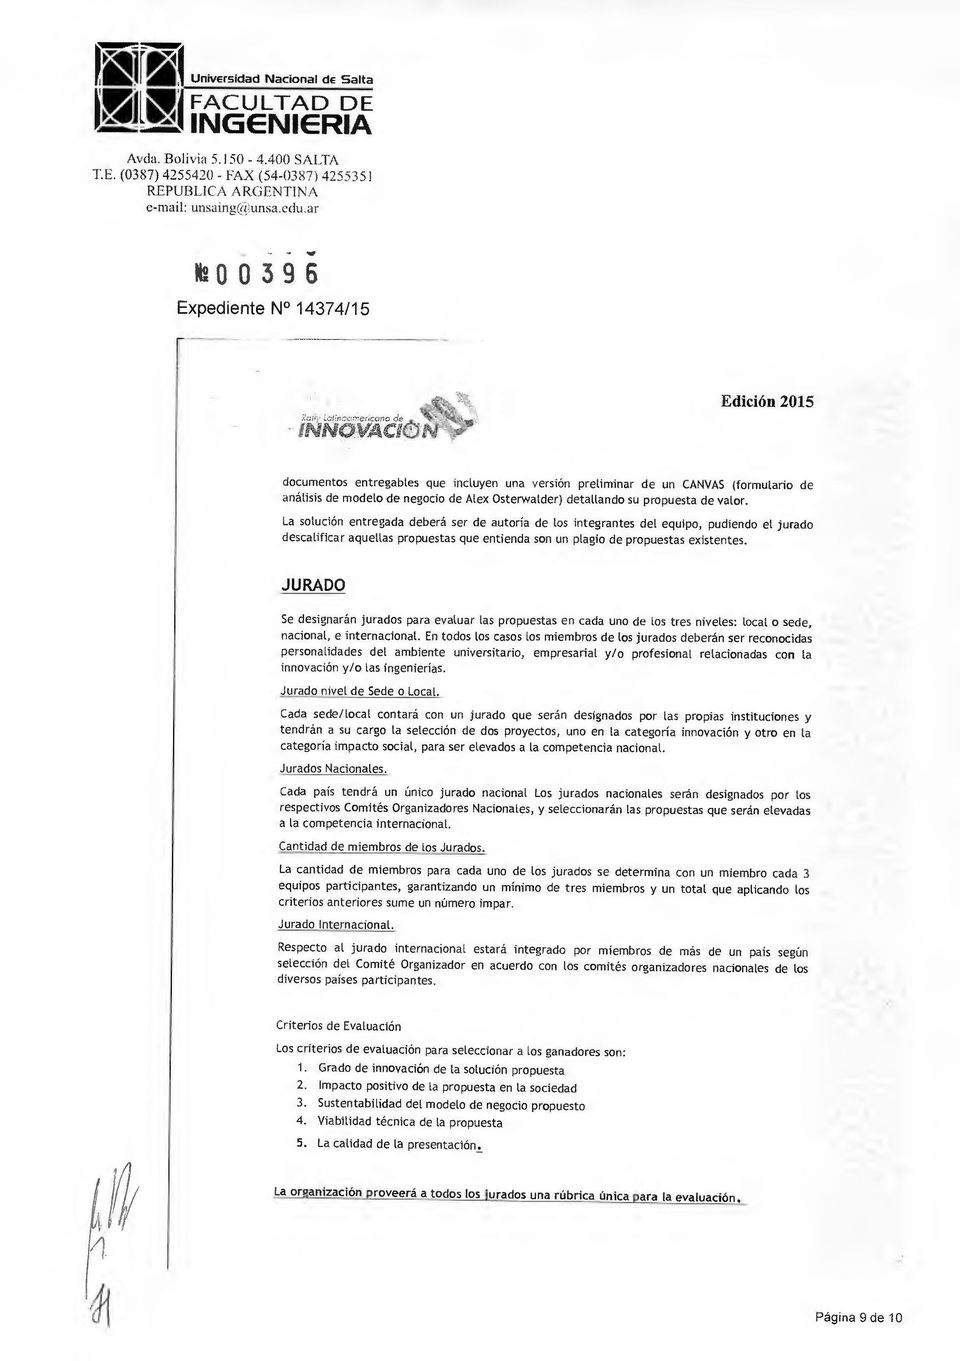 EPUBLICA ARGENTINA h003 96 ericarlo de INNOVACI documentos entregables que incluyen una versión preliminar de un CANVAS (formulario de análisis de modelo de negocio de Alex Osterwalder) detallando su